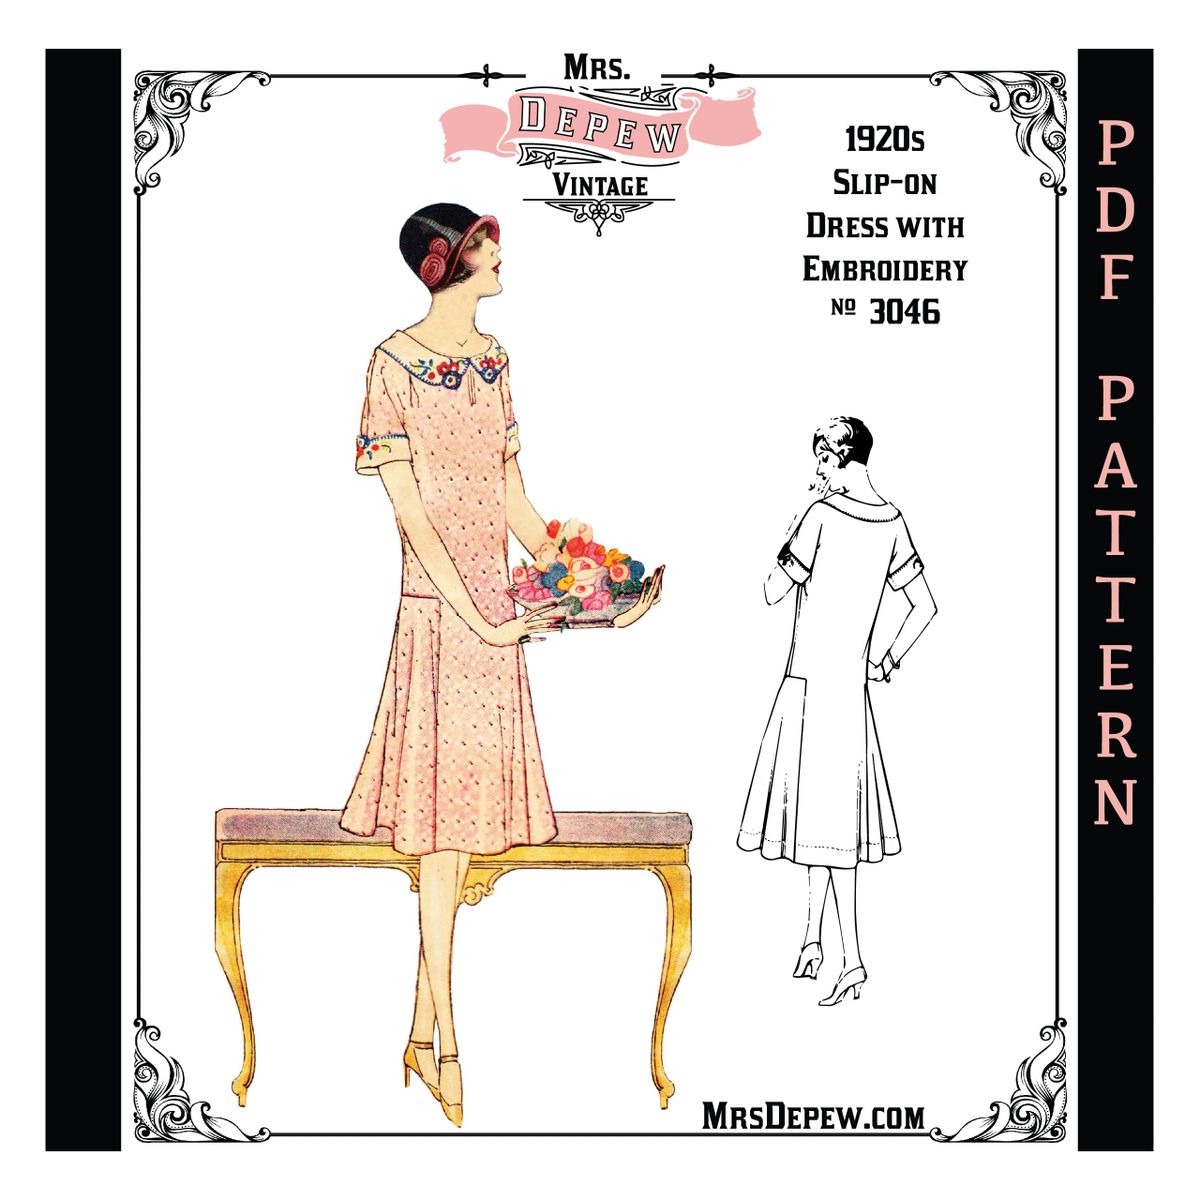 Vintage Sewing Pattern French Ladies' 1950s Pinup Bra PDF